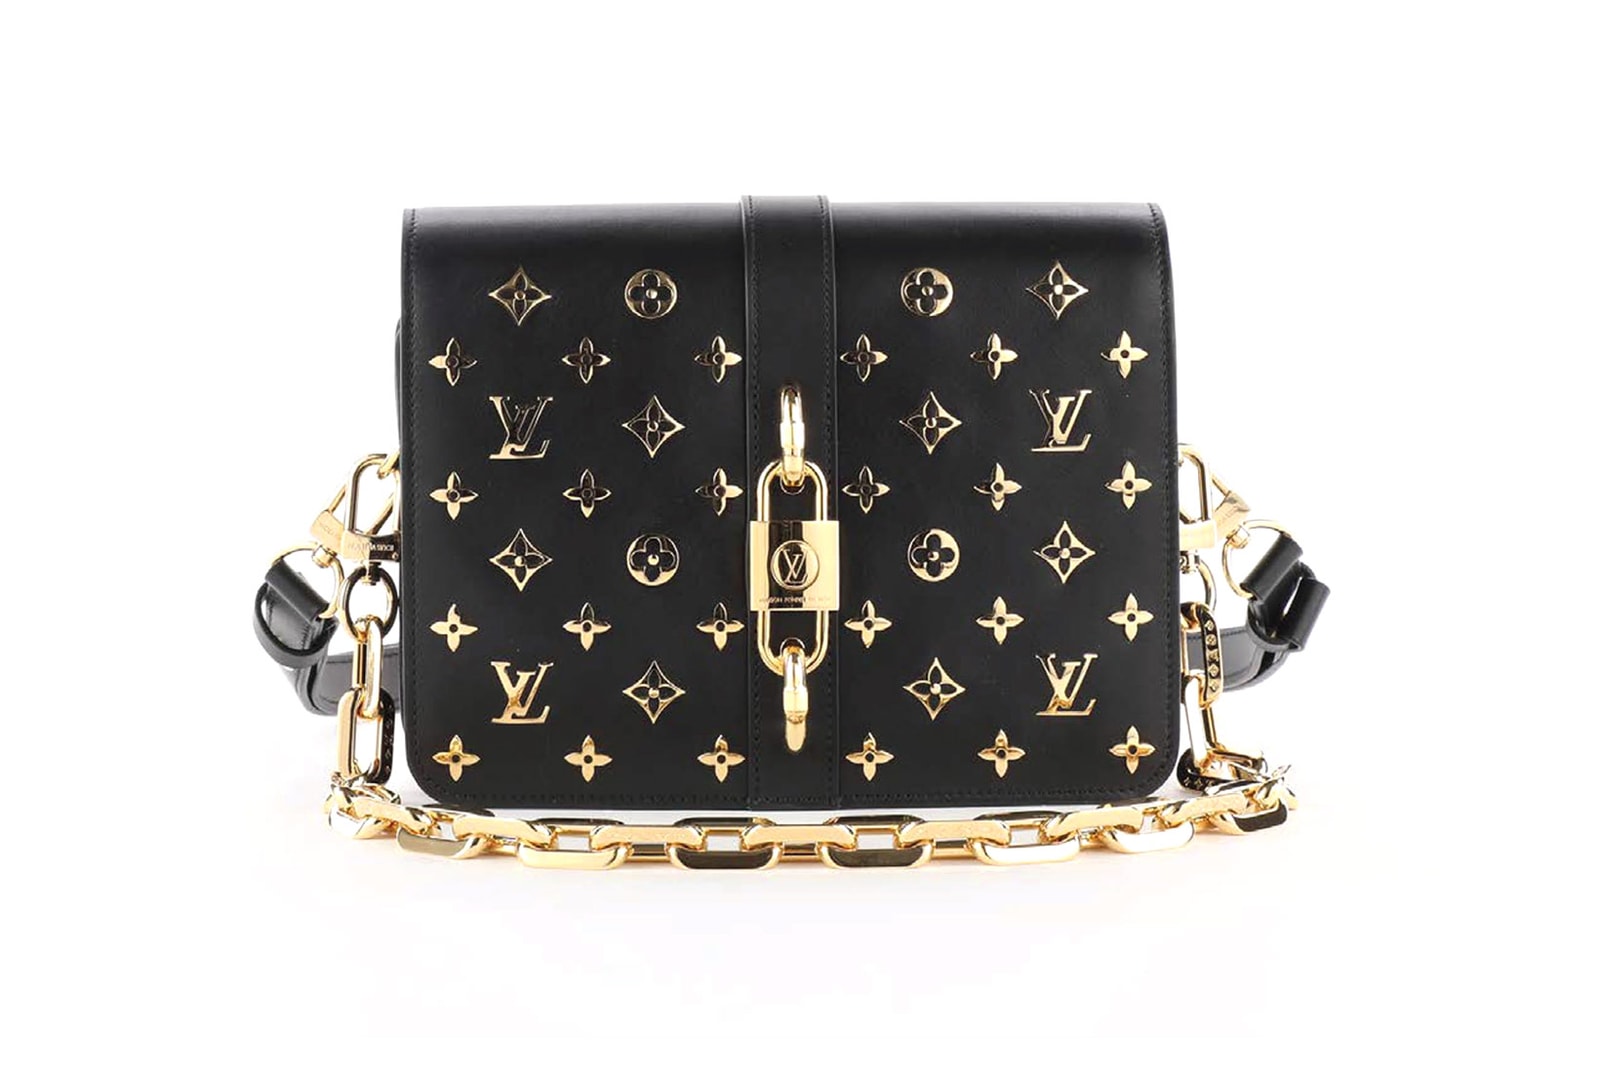 Louis Vuitton Rendez Vous Ss21 Handbag Release Iicf